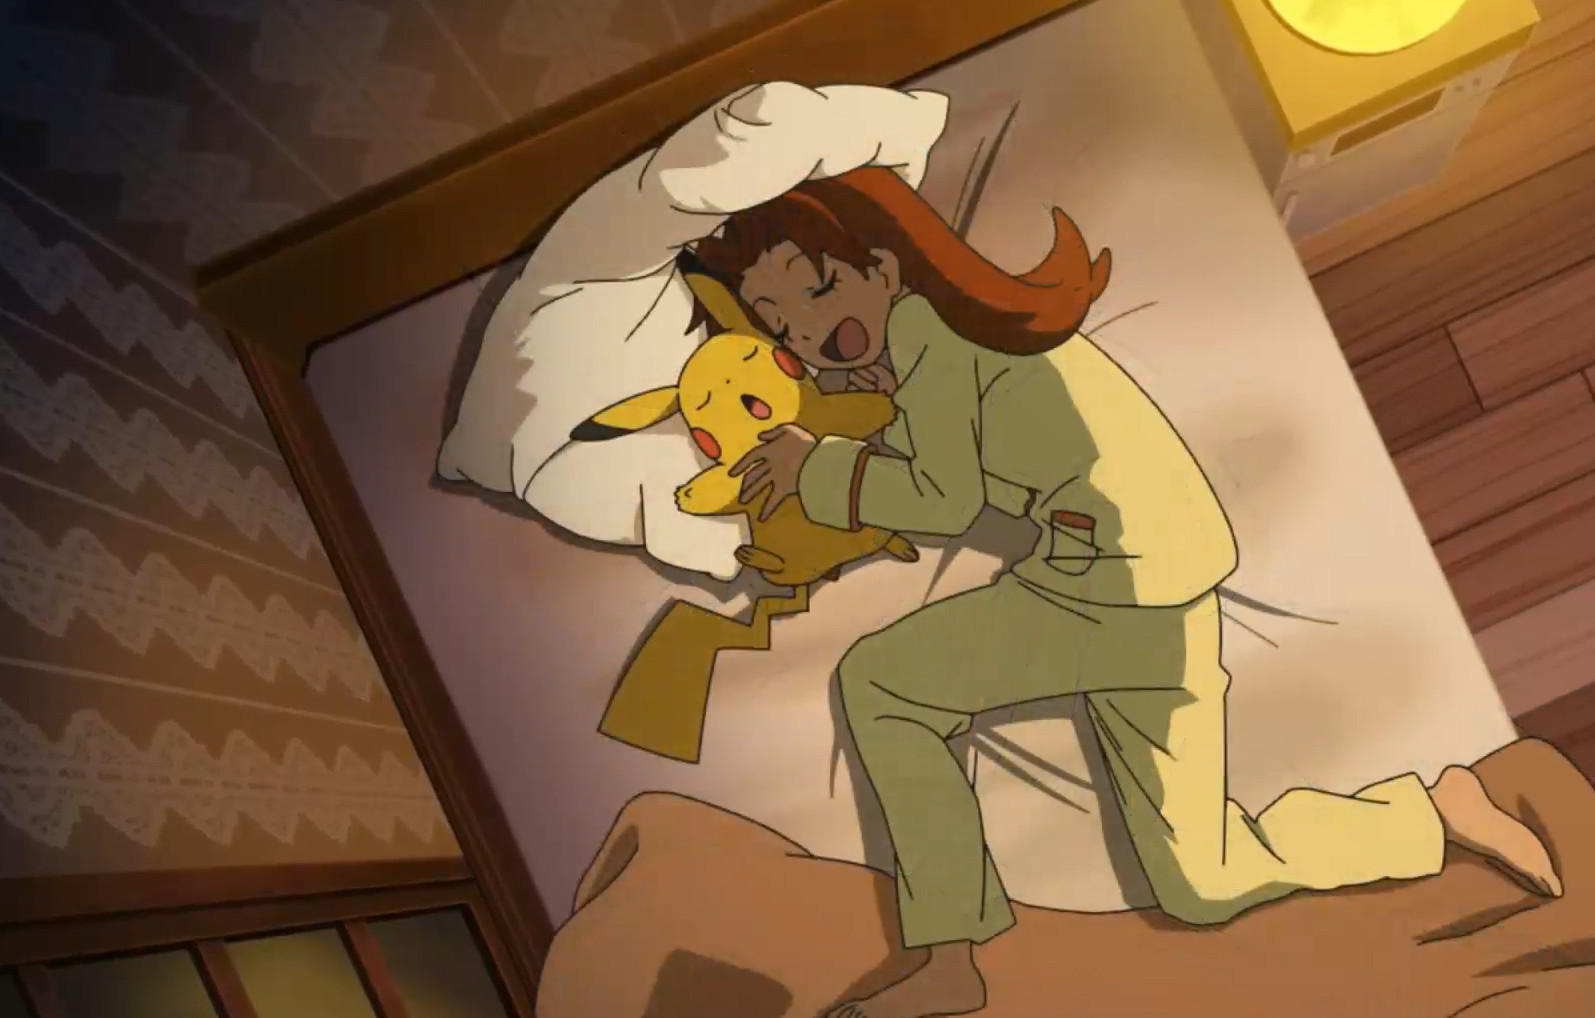 Entenda o motivo pelo qual Pikachu fugiu de Ash no último episódio de Pokémon Journeys